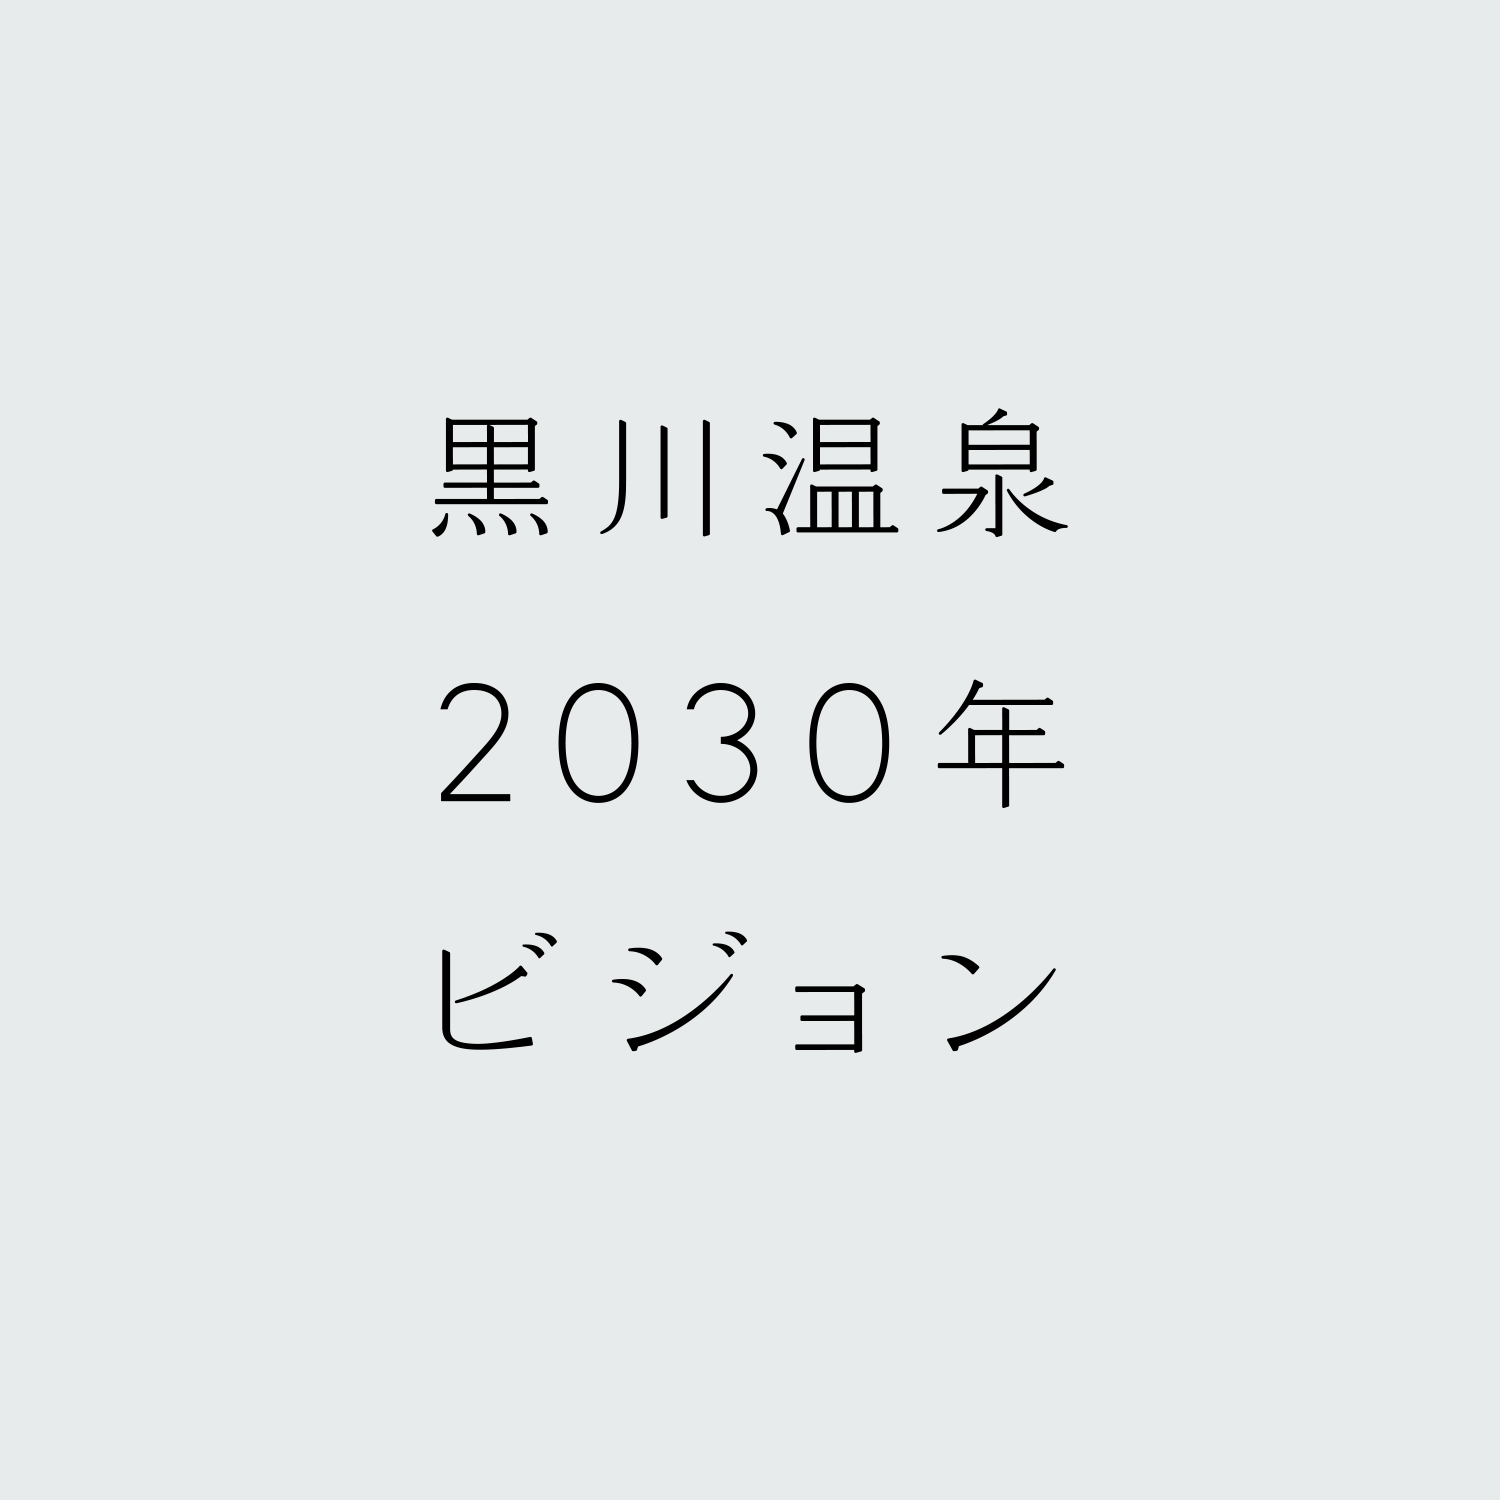 黒川温泉2030年ビジョン